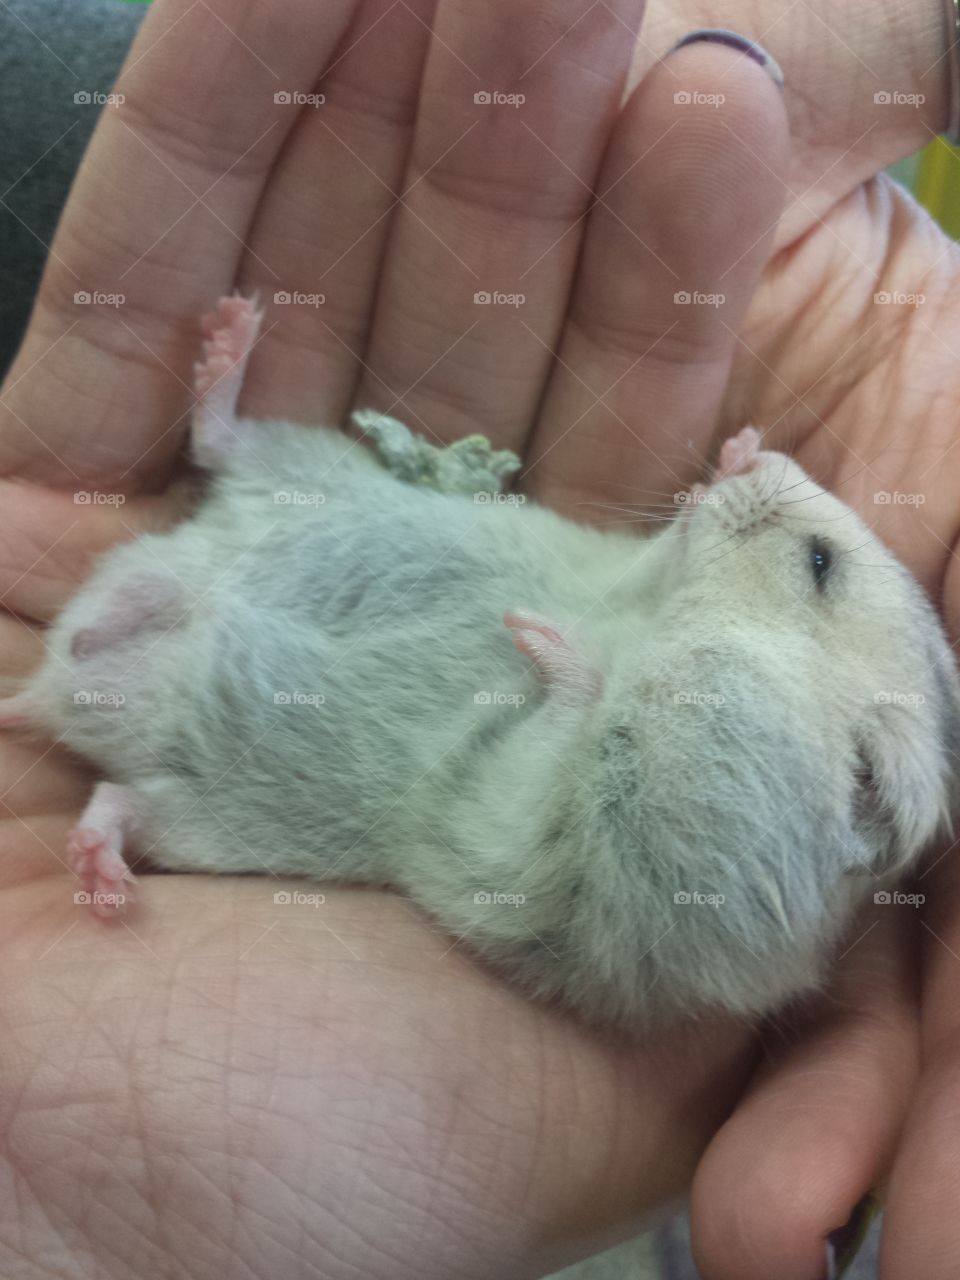 Small rat on human hand